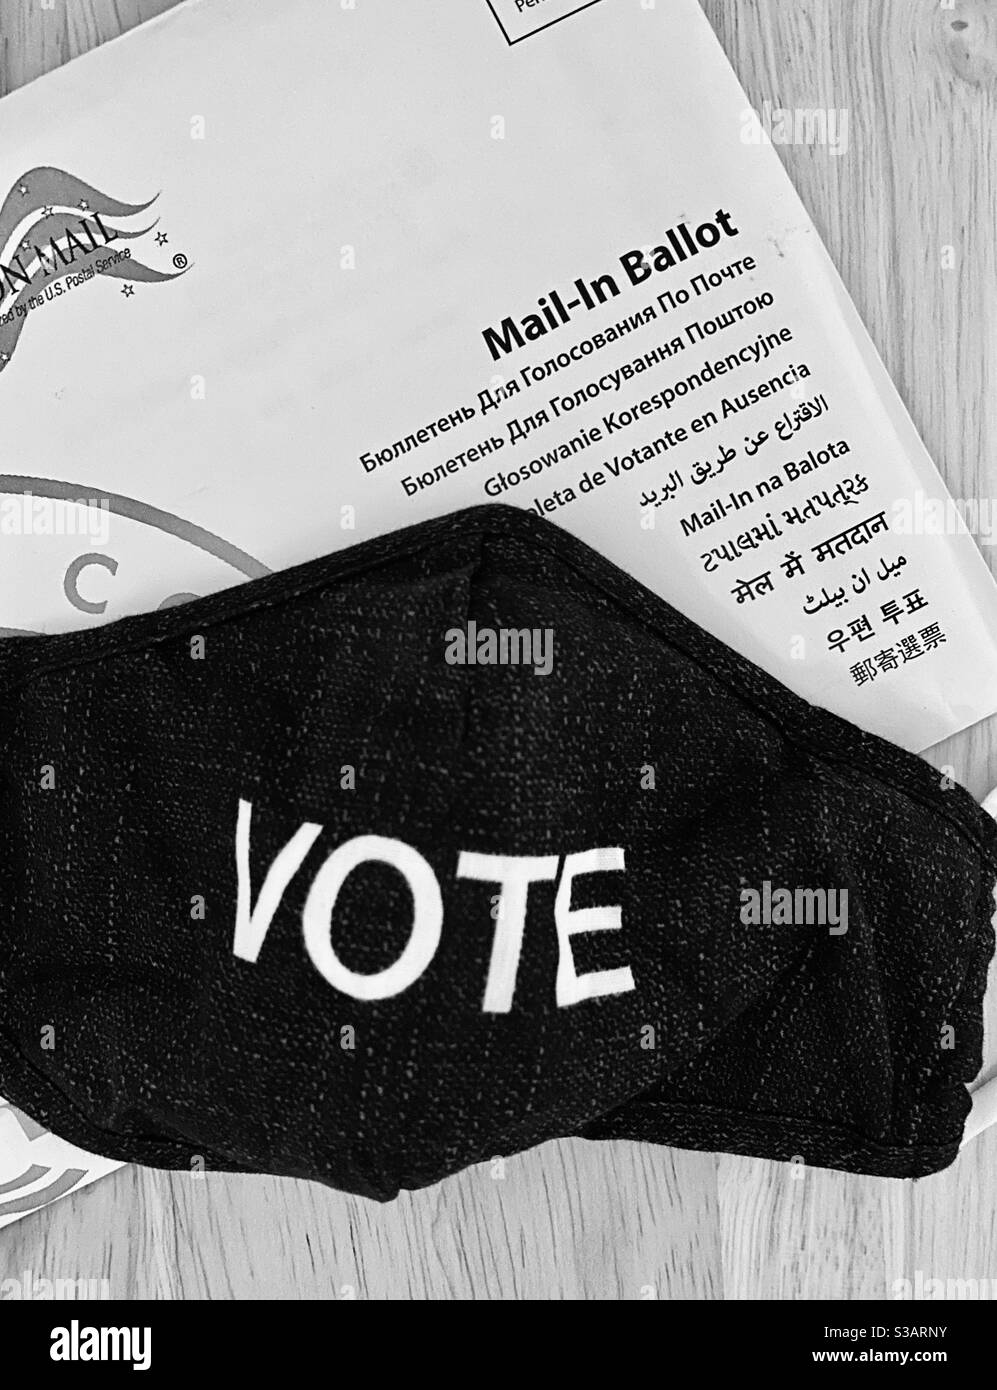 Raus und abstimmen! Maskieren Sie oder lassen Sie sich Ihre Mail-in-Abstimmung senden Stockfoto